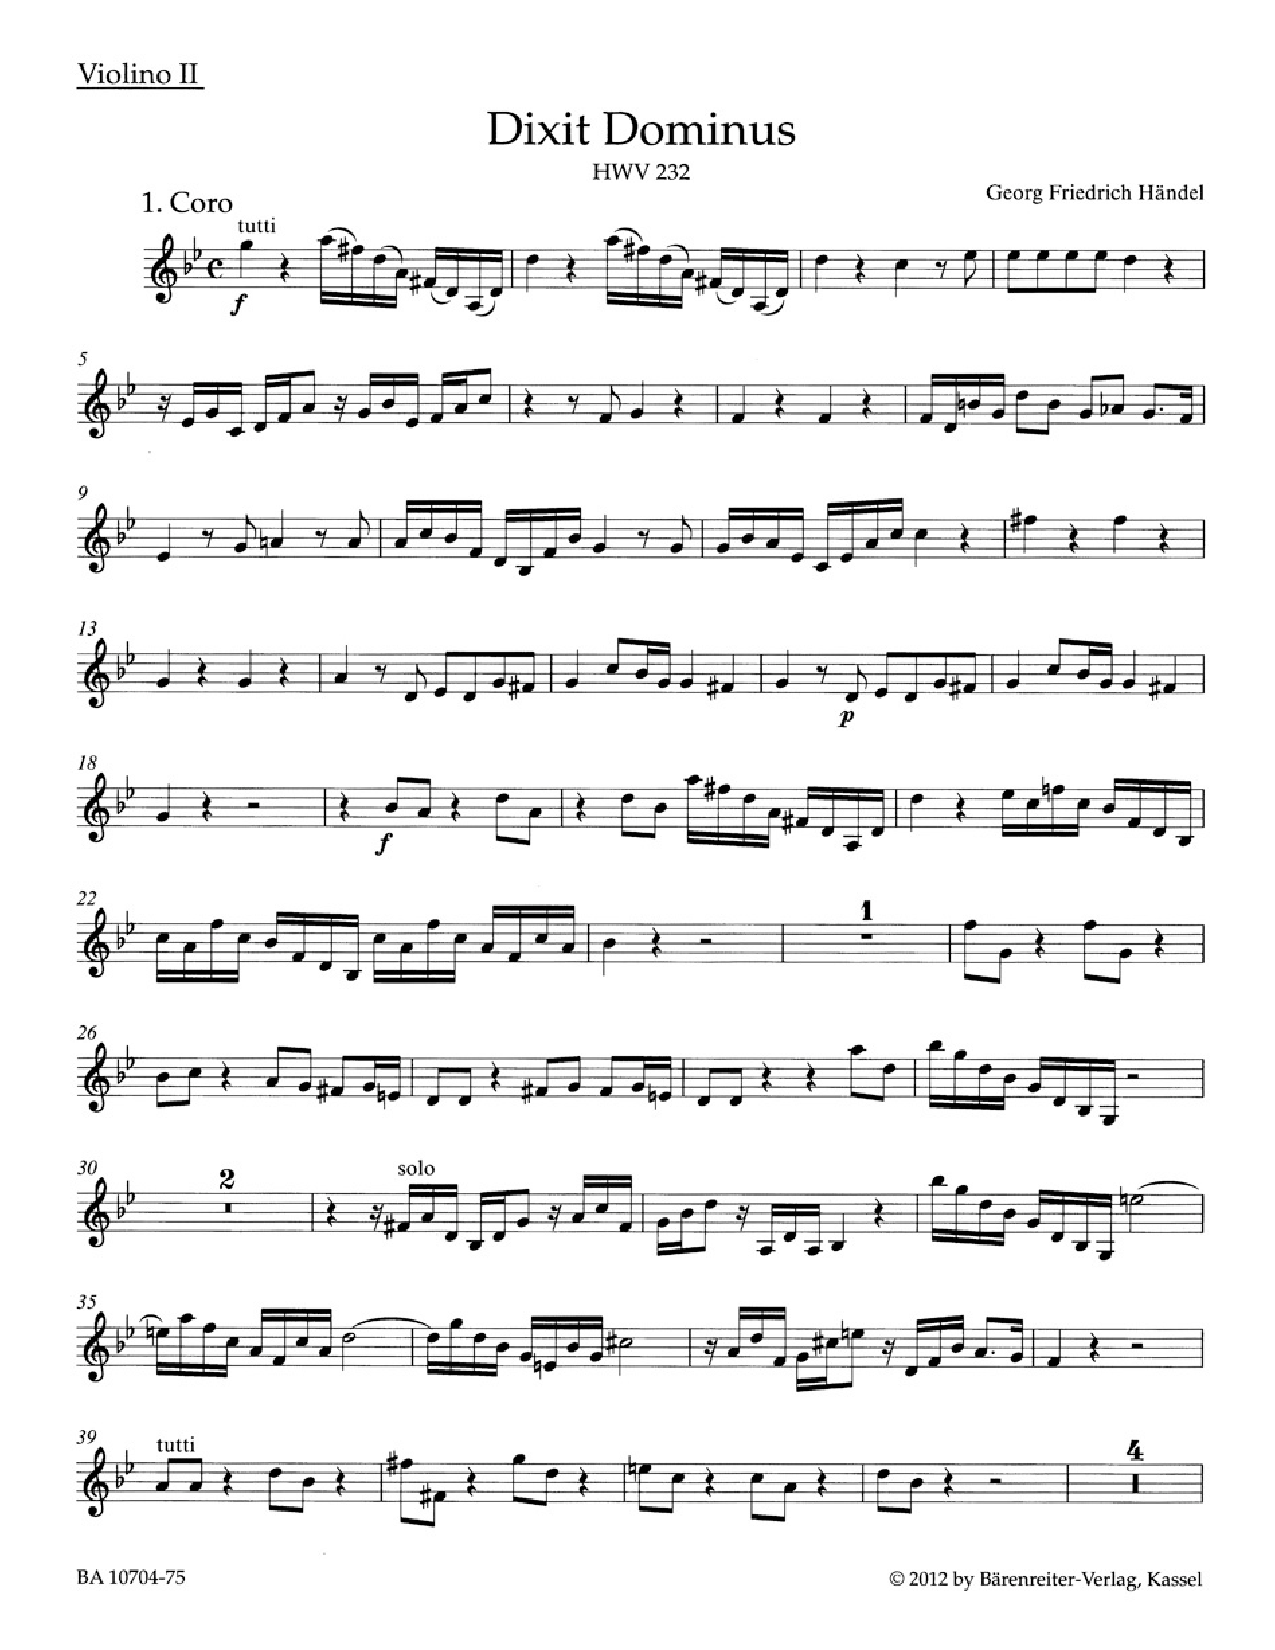 Dixit Dominus HWV 232 Violin 2  3-copy minimum